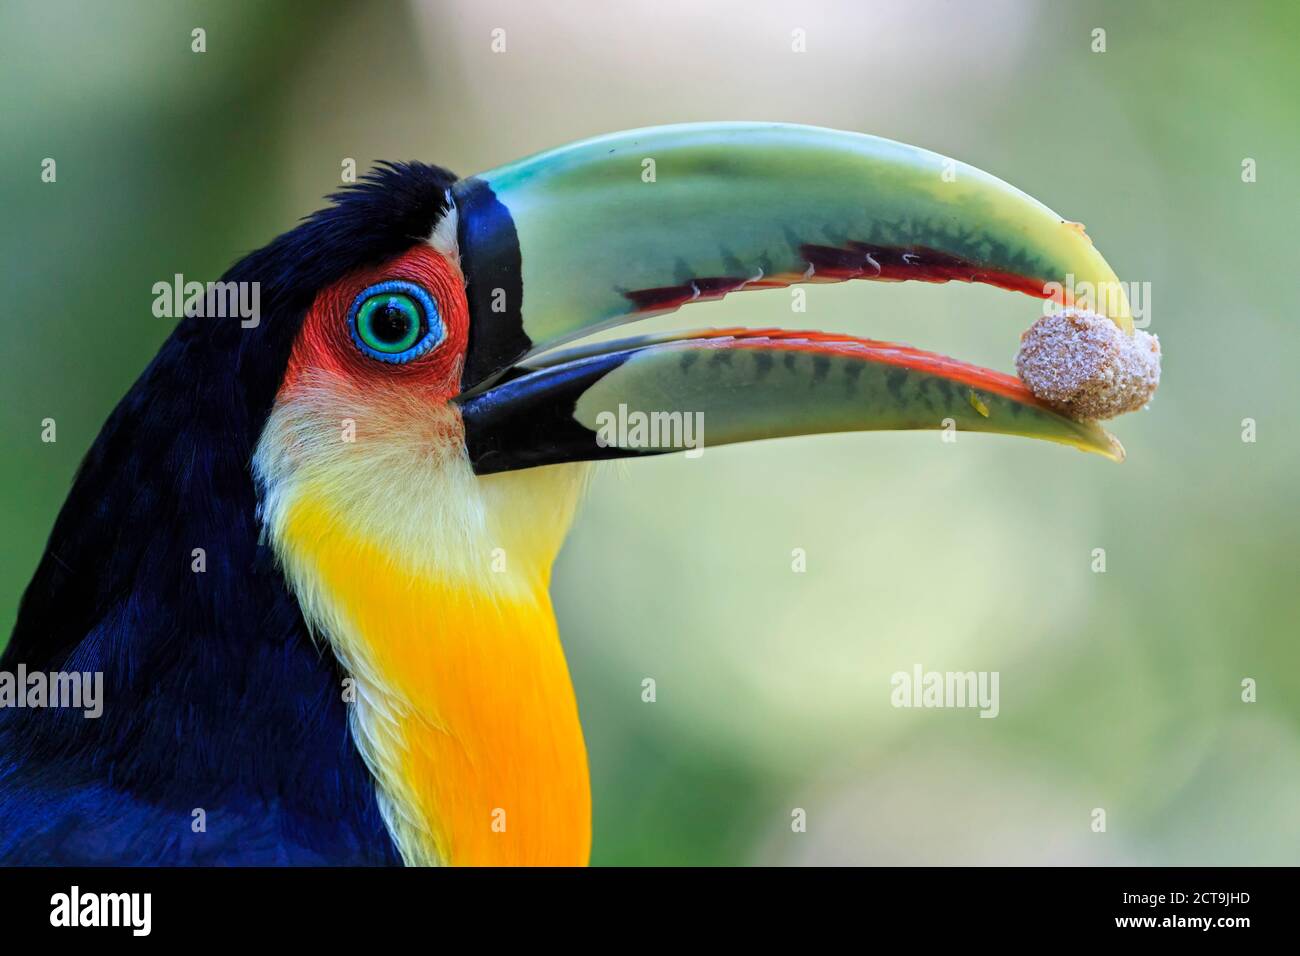 Brazil, Mato Grosso, Mato grosso do Sul, portrait of green-billed toucan, Ramphastos dicolorus Stock Photo